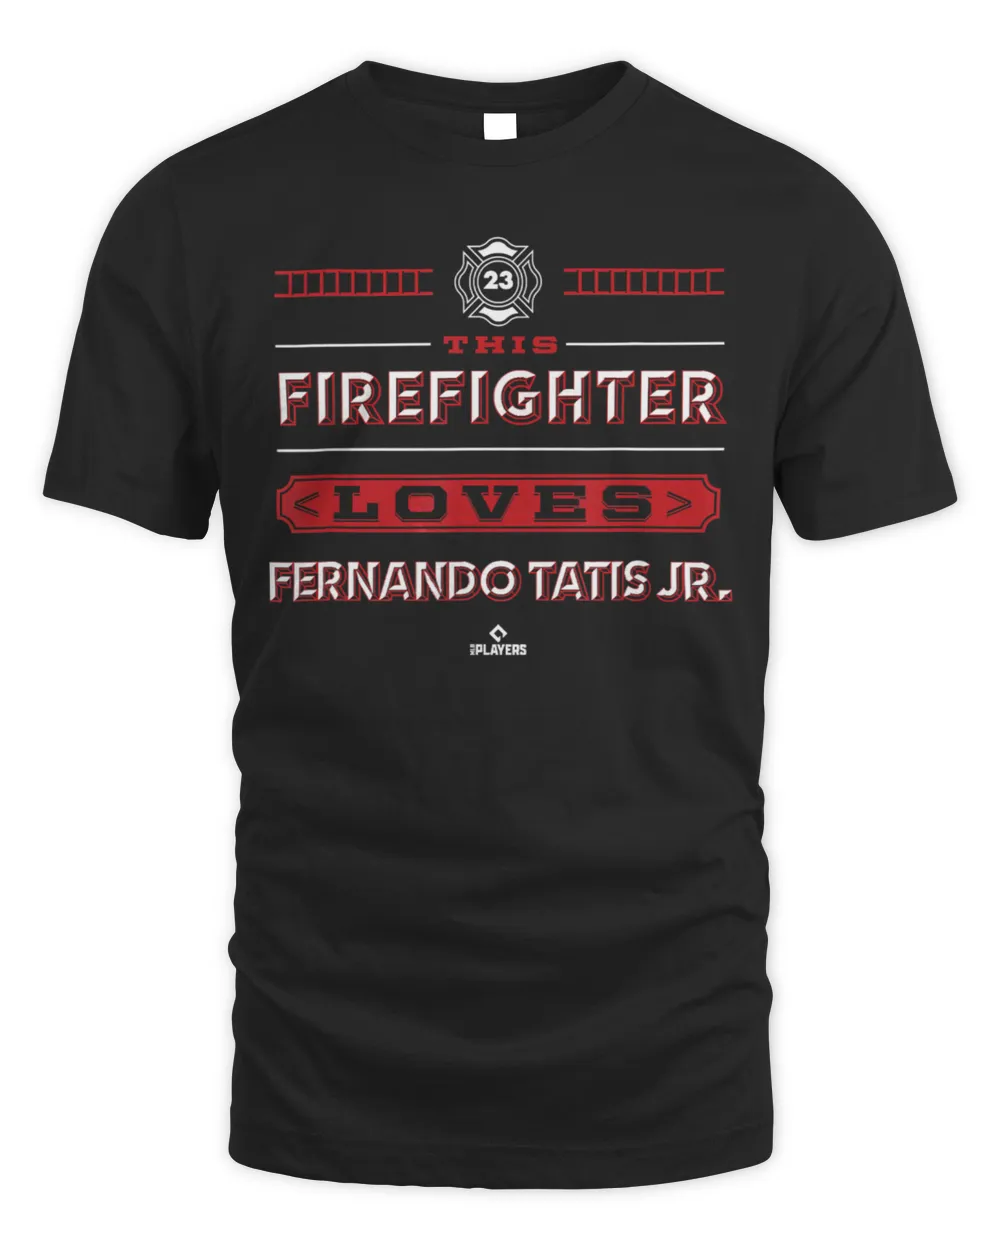 This Firefighter Loves Fernando Tatis J